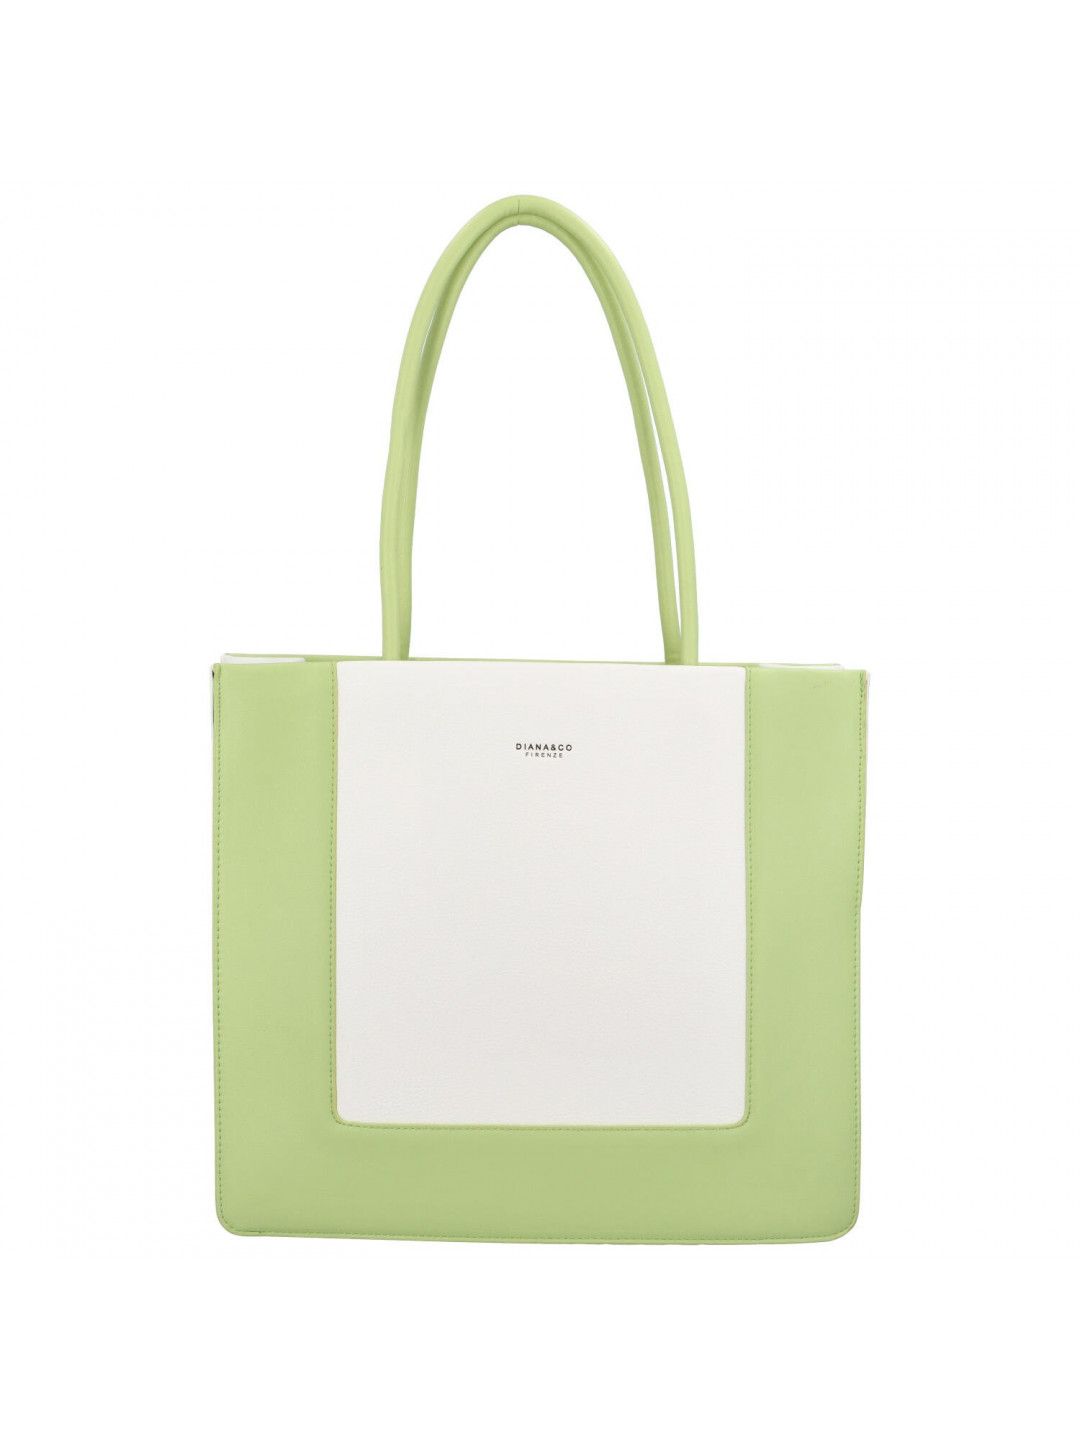 Trendová kabelka přes rameno Tarami bílá – výrazná zelená